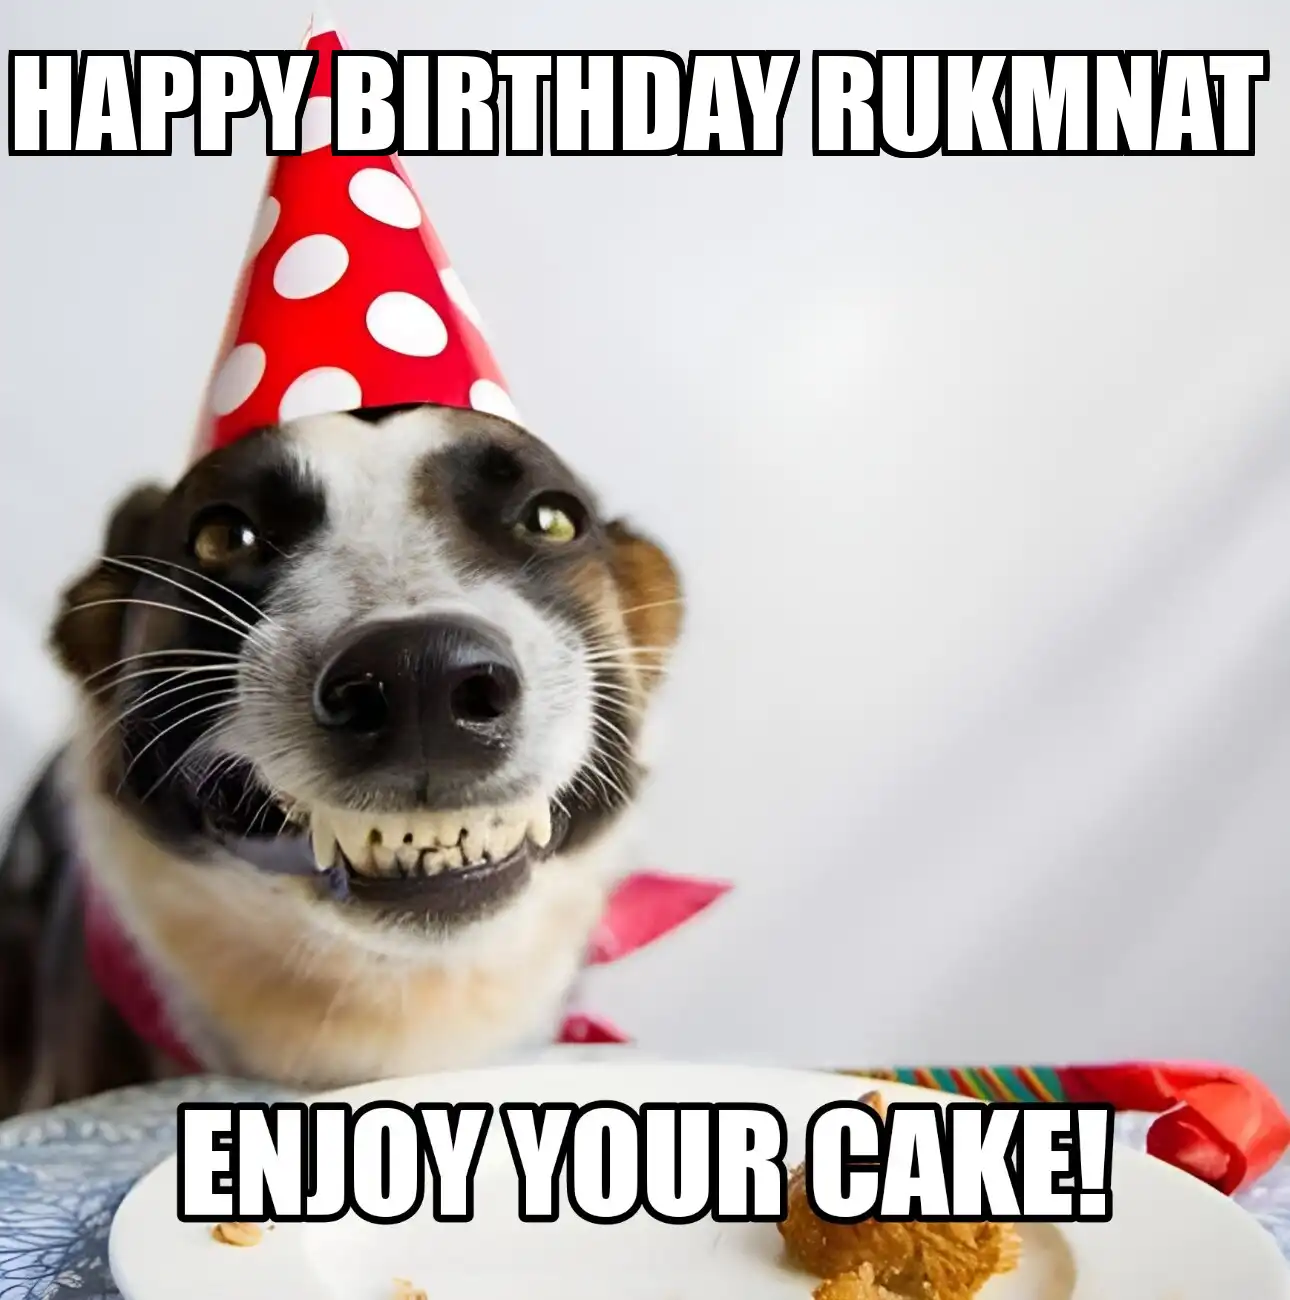 Happy Birthday Rukmnat Enjoy Your Cake Dog Meme